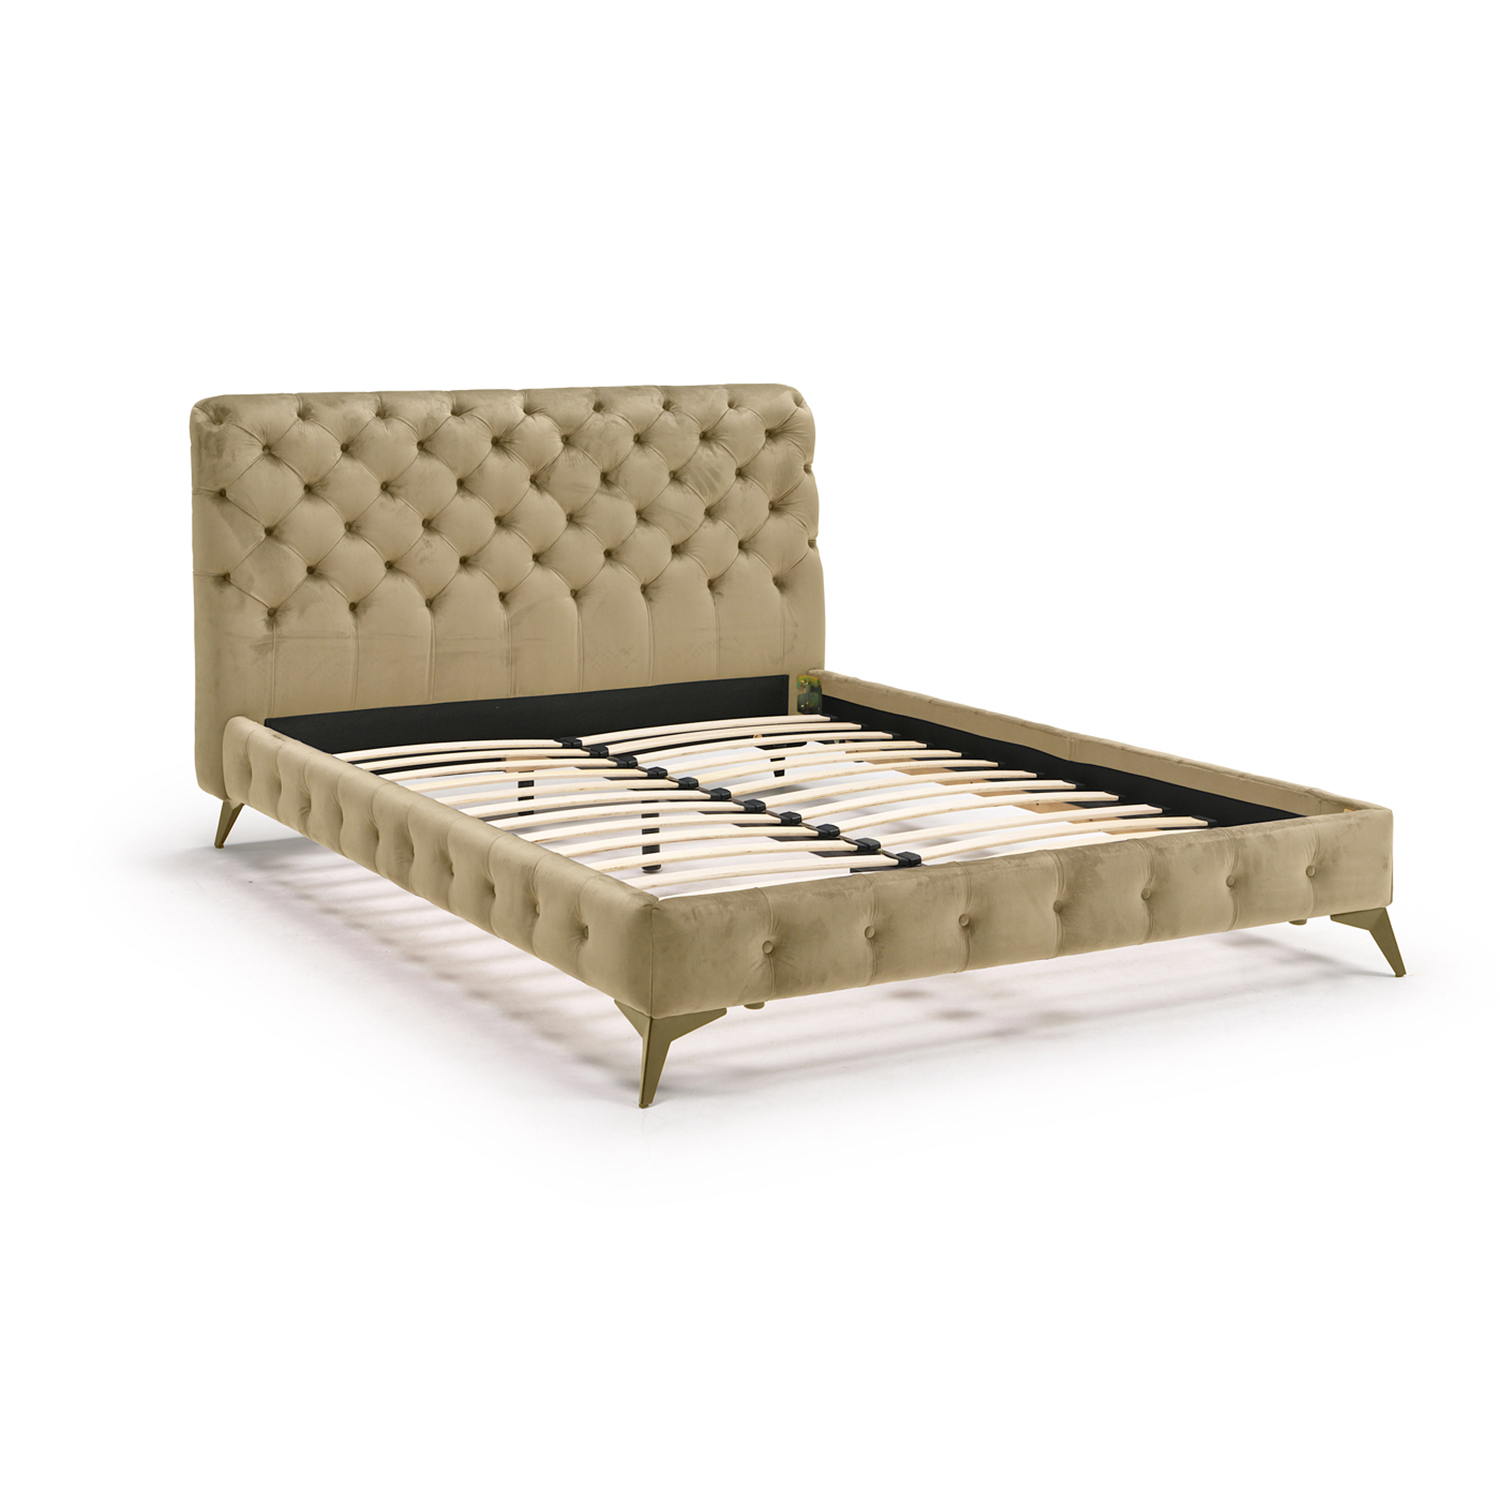 ベッド ベッドフレーム ダブル ダブルベッド ベット ベロア調生地 木製 ウッドスプリング 通気性 高級 新生活